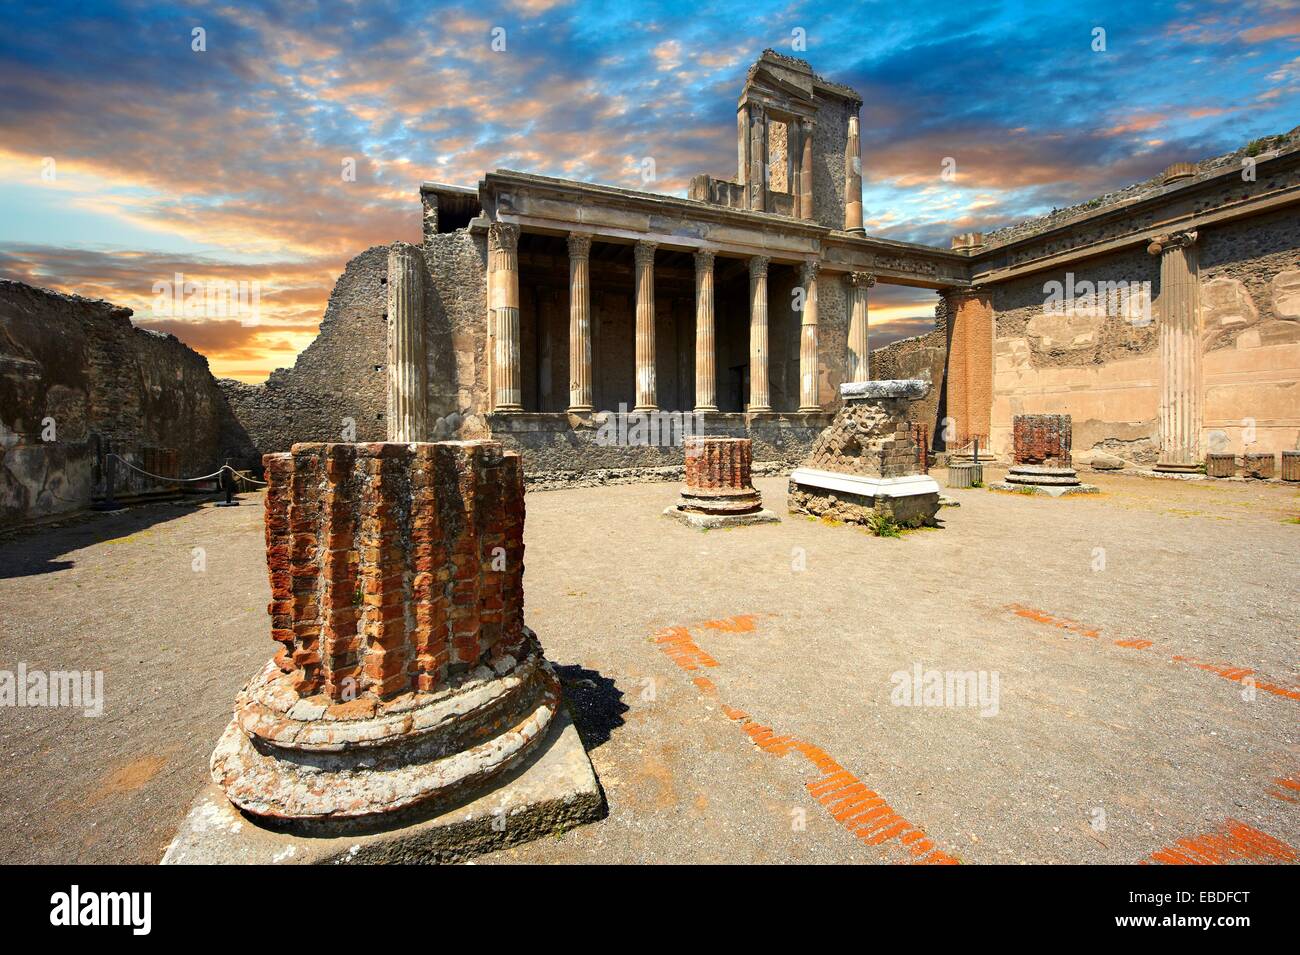 Les colonnes de la 2e 100 B C basilique romaine de Pompéi qui a été de la Cour de justice de l'époque romaine et le cœur de la vie économique Banque D'Images